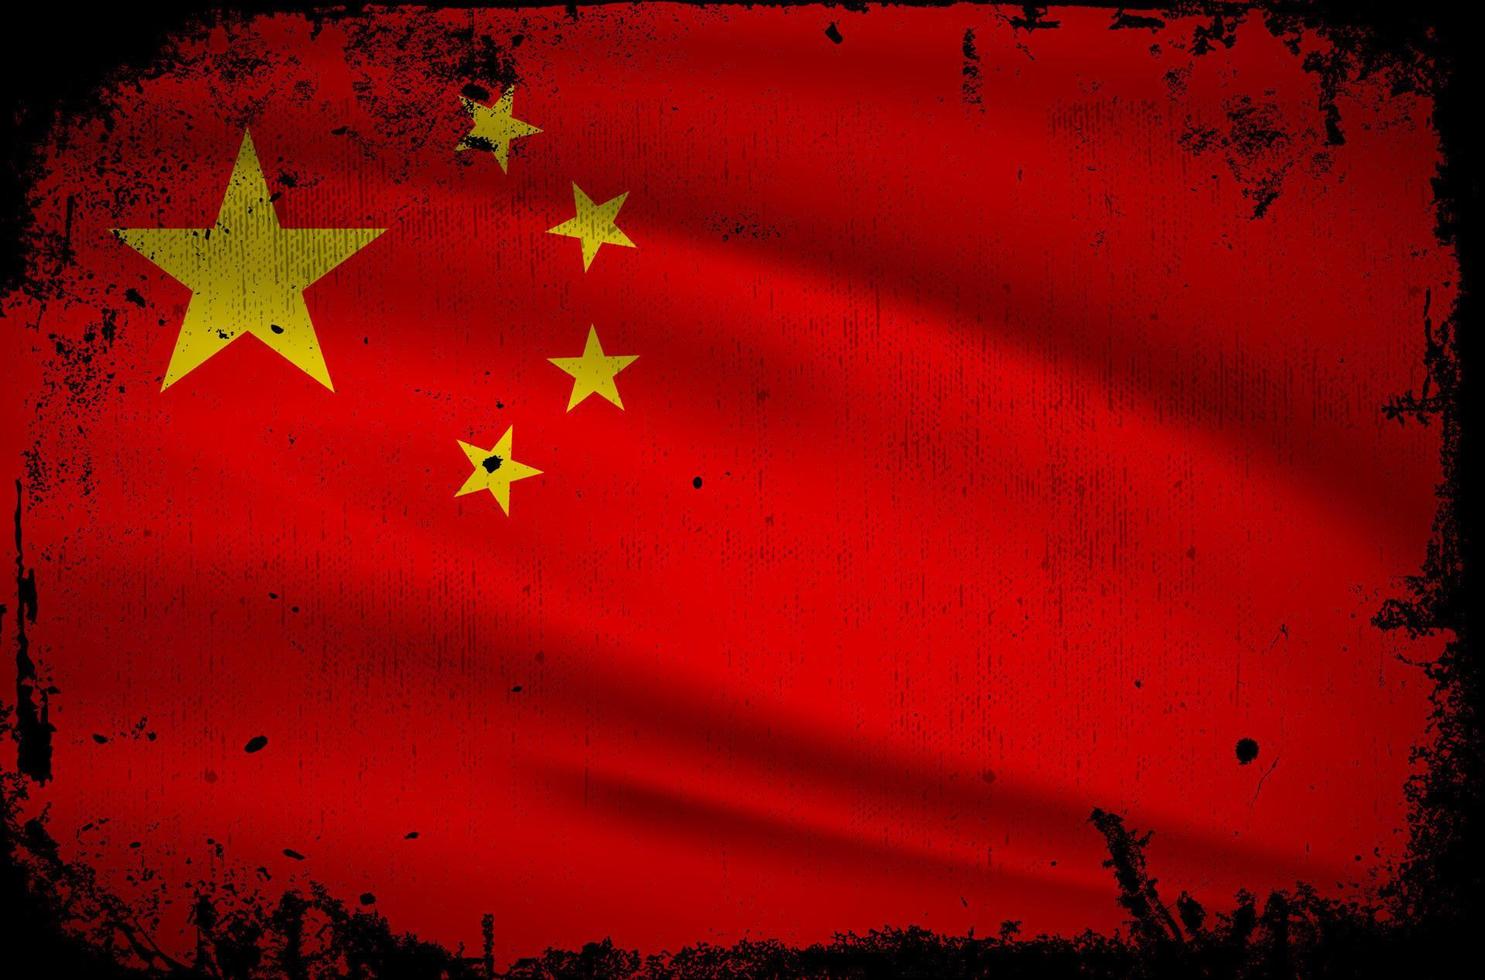 nouveau vecteur abstrait de fond de drapeau de Chine avec le style grunge de course. illustration vectorielle de la fête de l'indépendance de la chine.